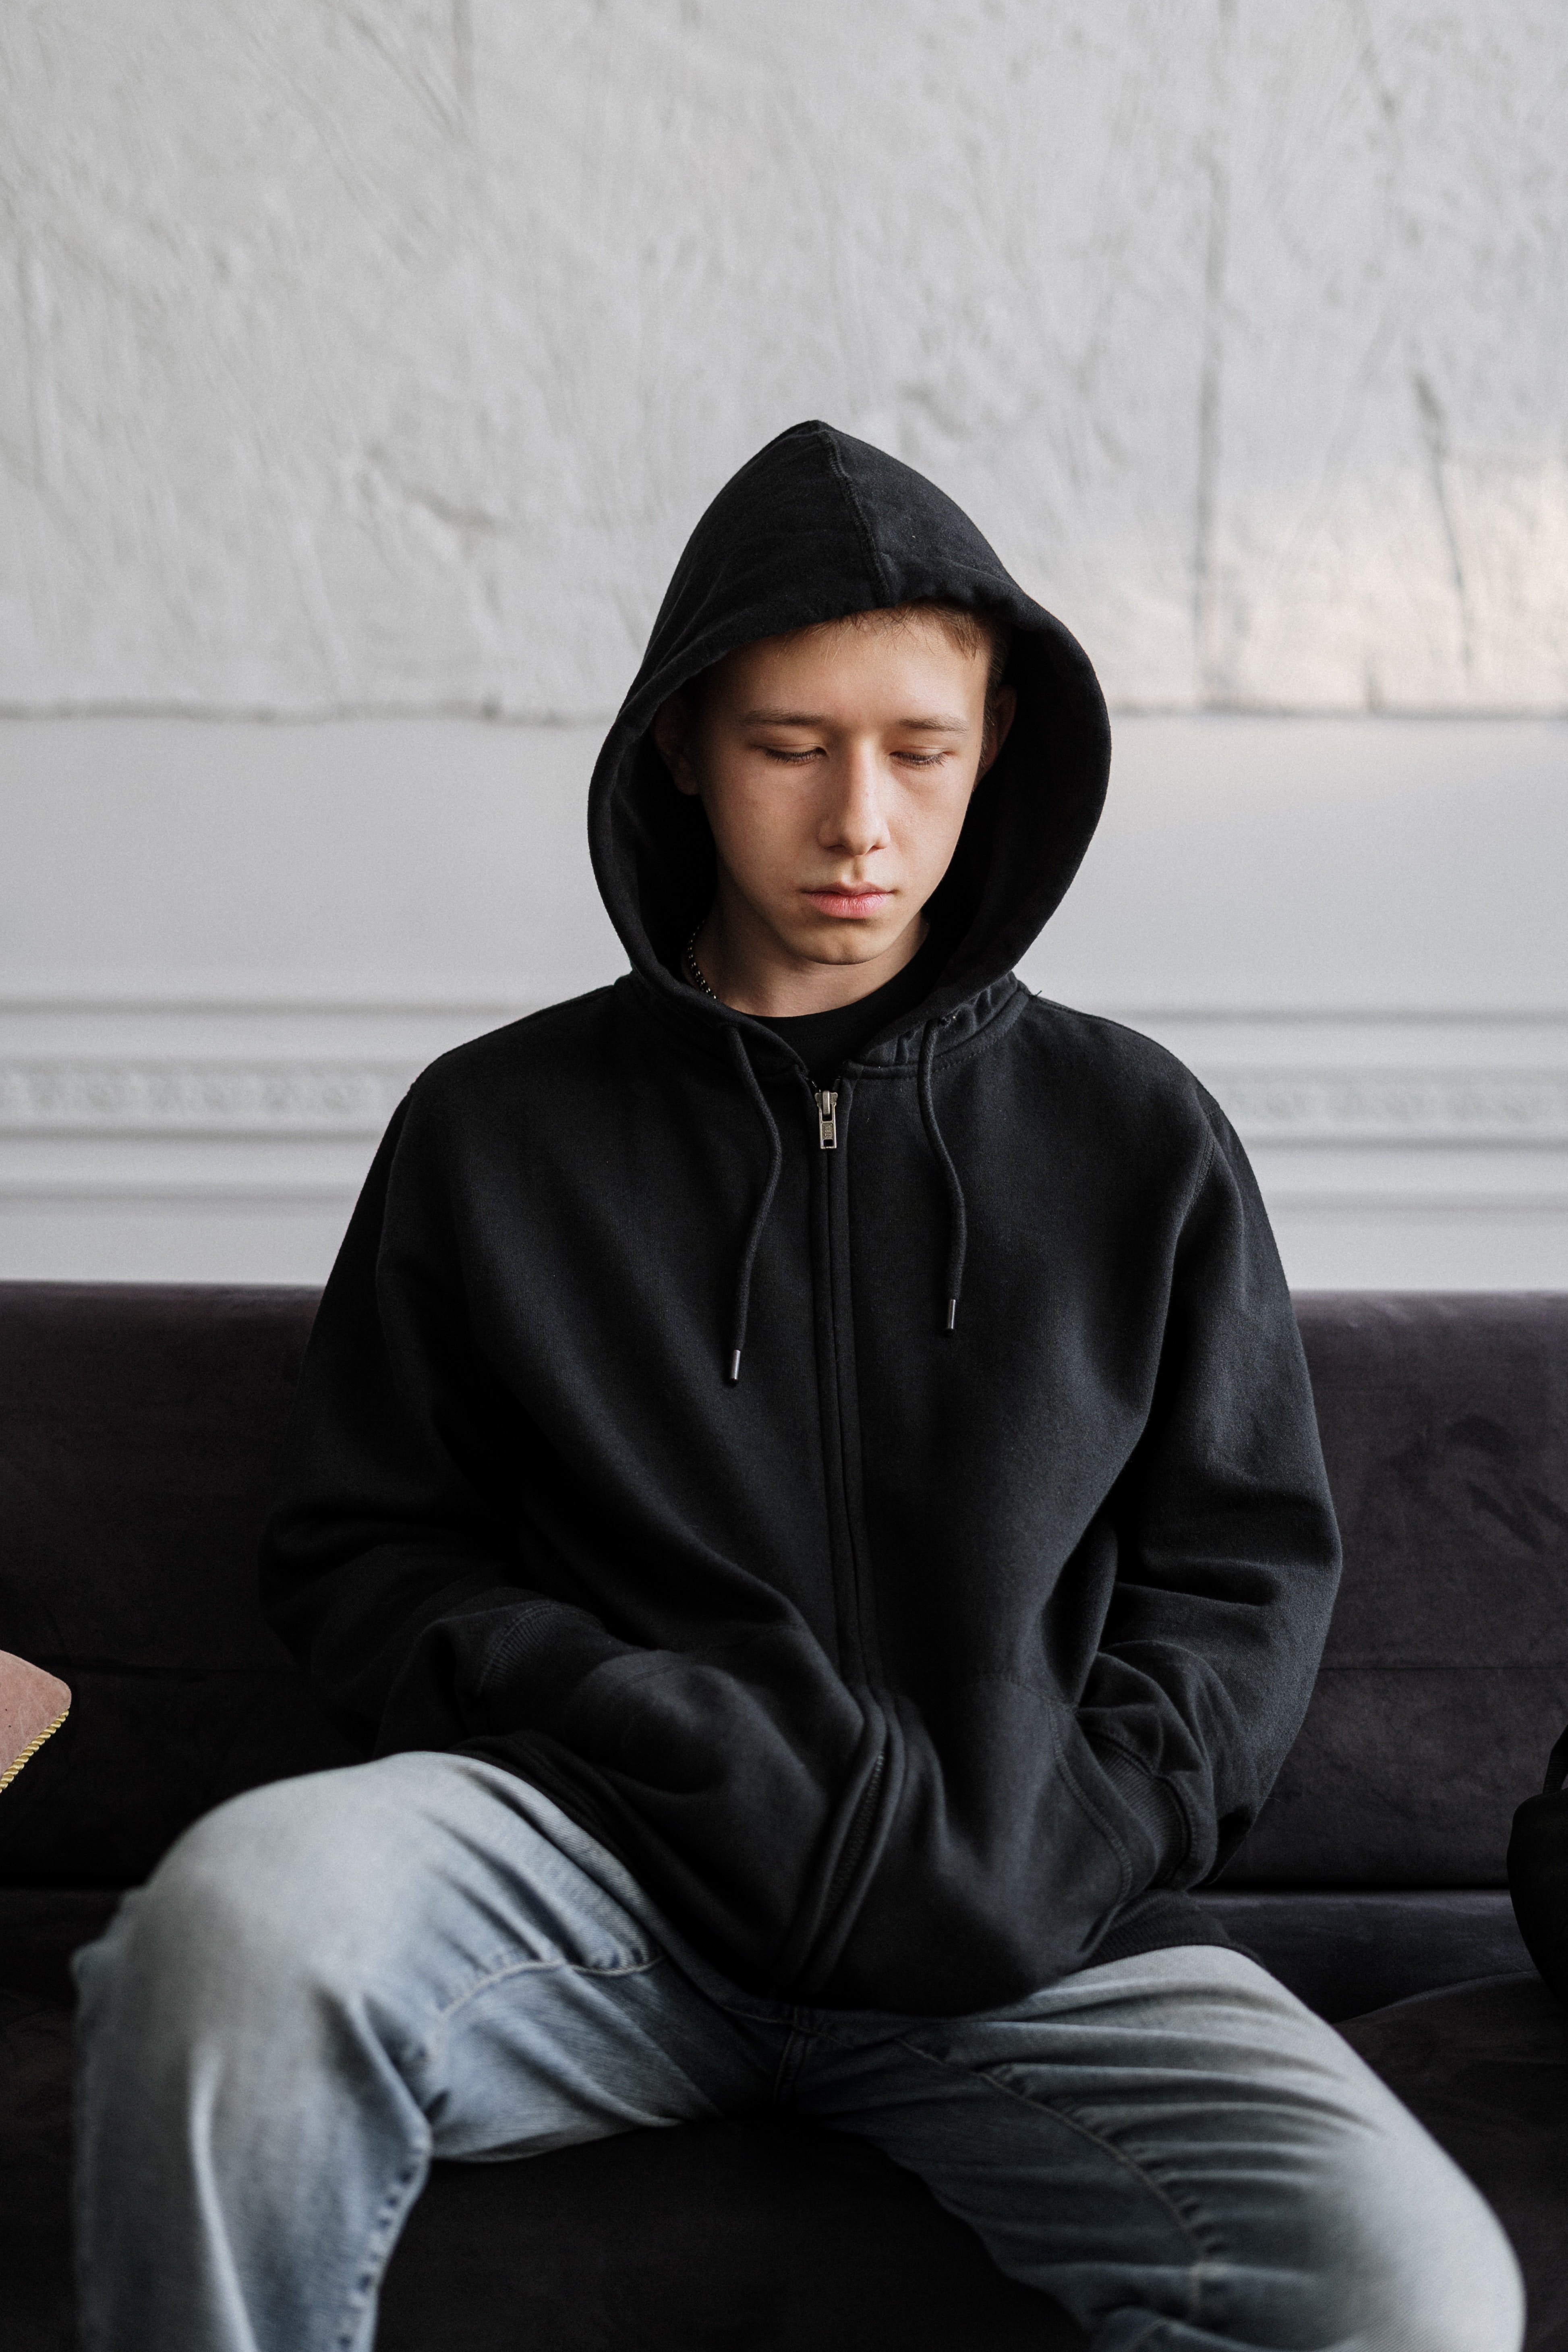 Sad teen in a black hoodie | Photo: Pexels